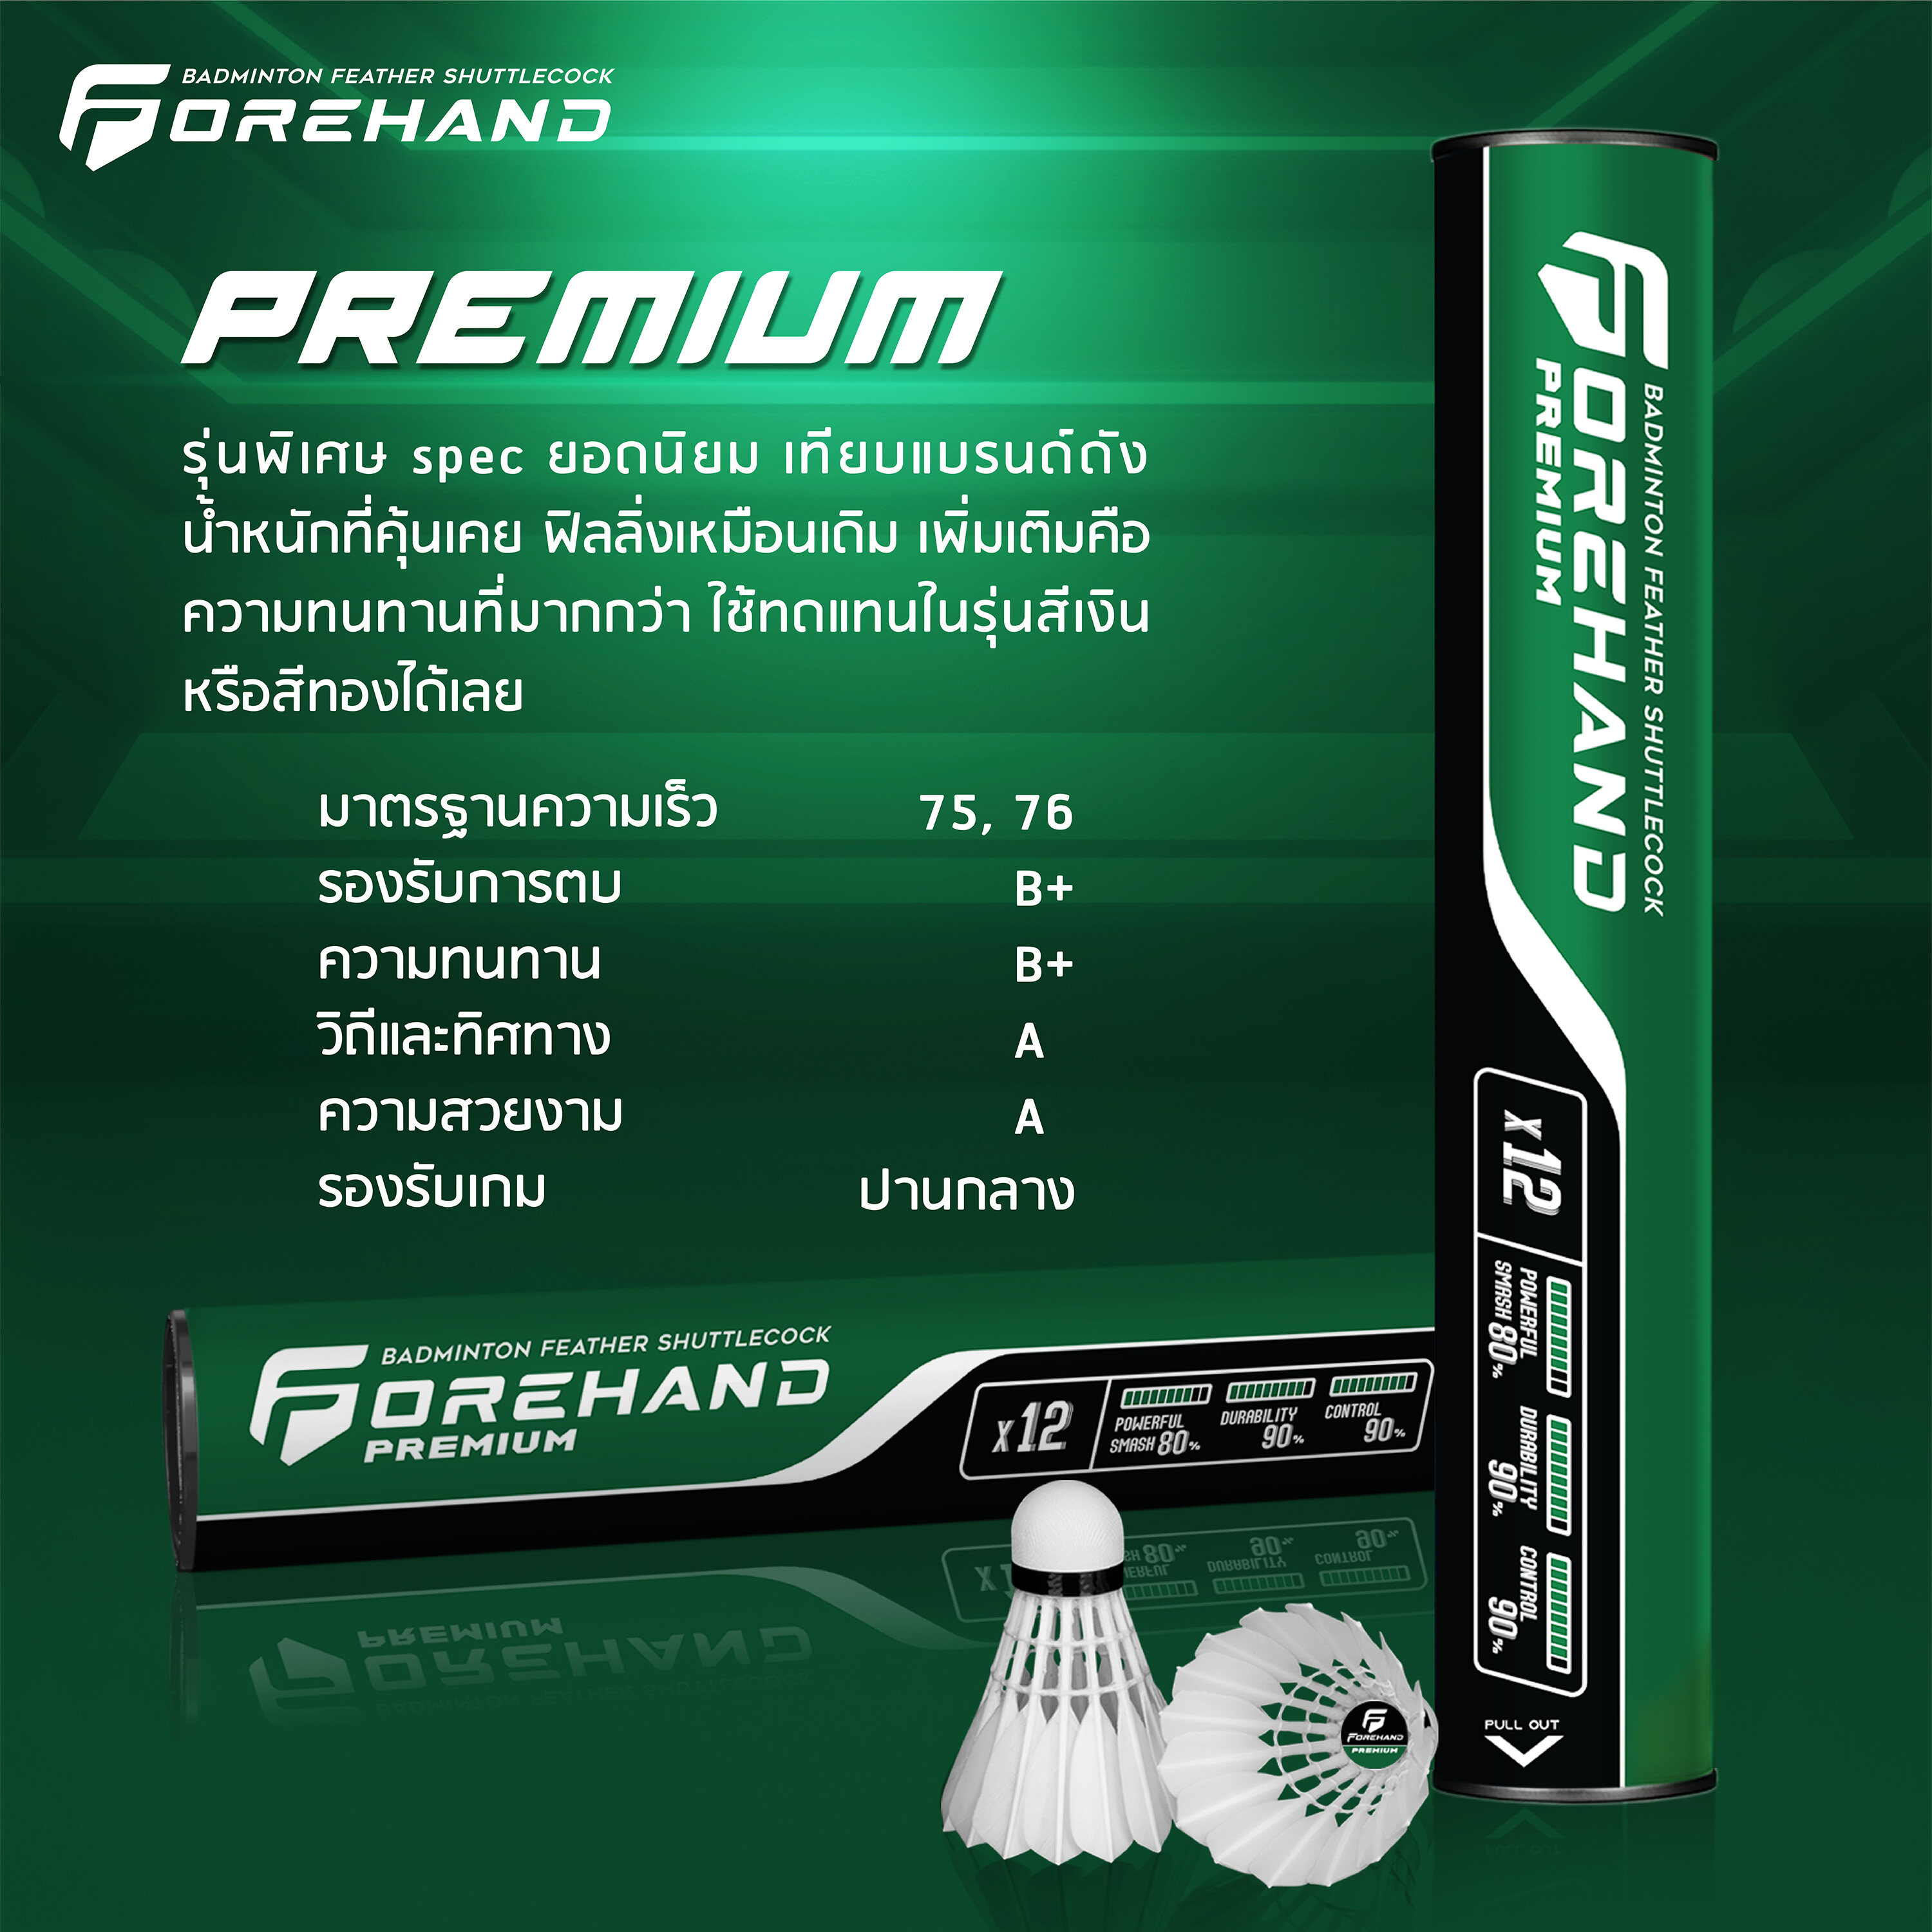 คำอธิบายเพิ่มเติมเกี่ยวกับ ลูกแบดมินตัน Forehand รุ่น Premium (หลอดสีเขียวดำ)